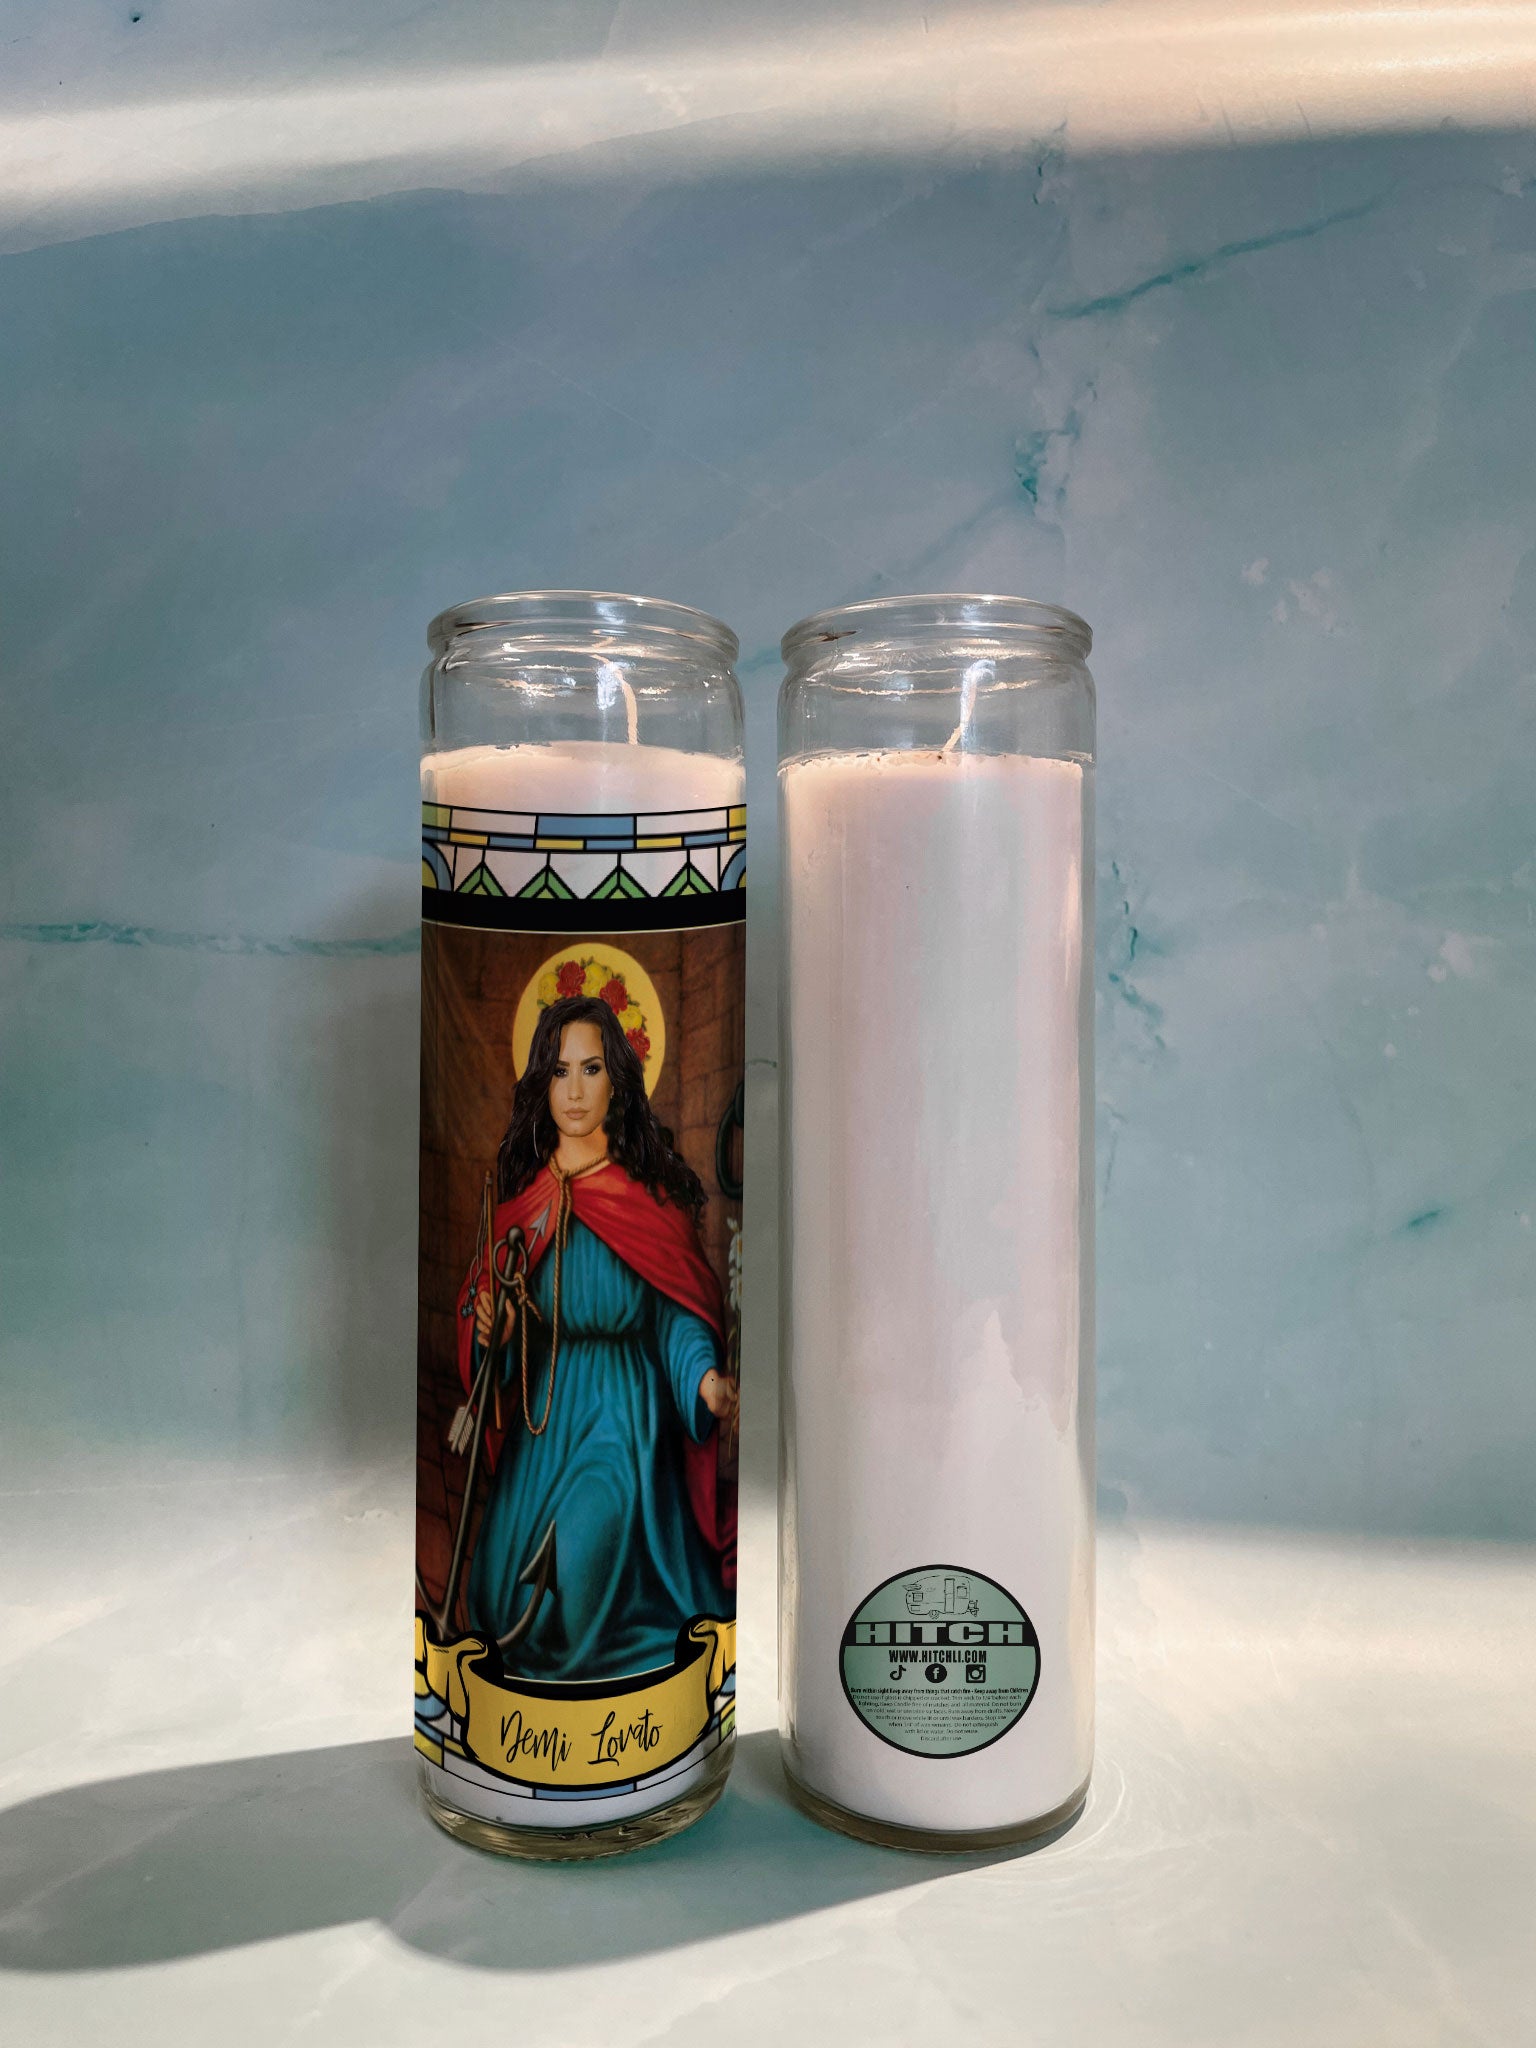 Demi Lovato Original Prayer Candle